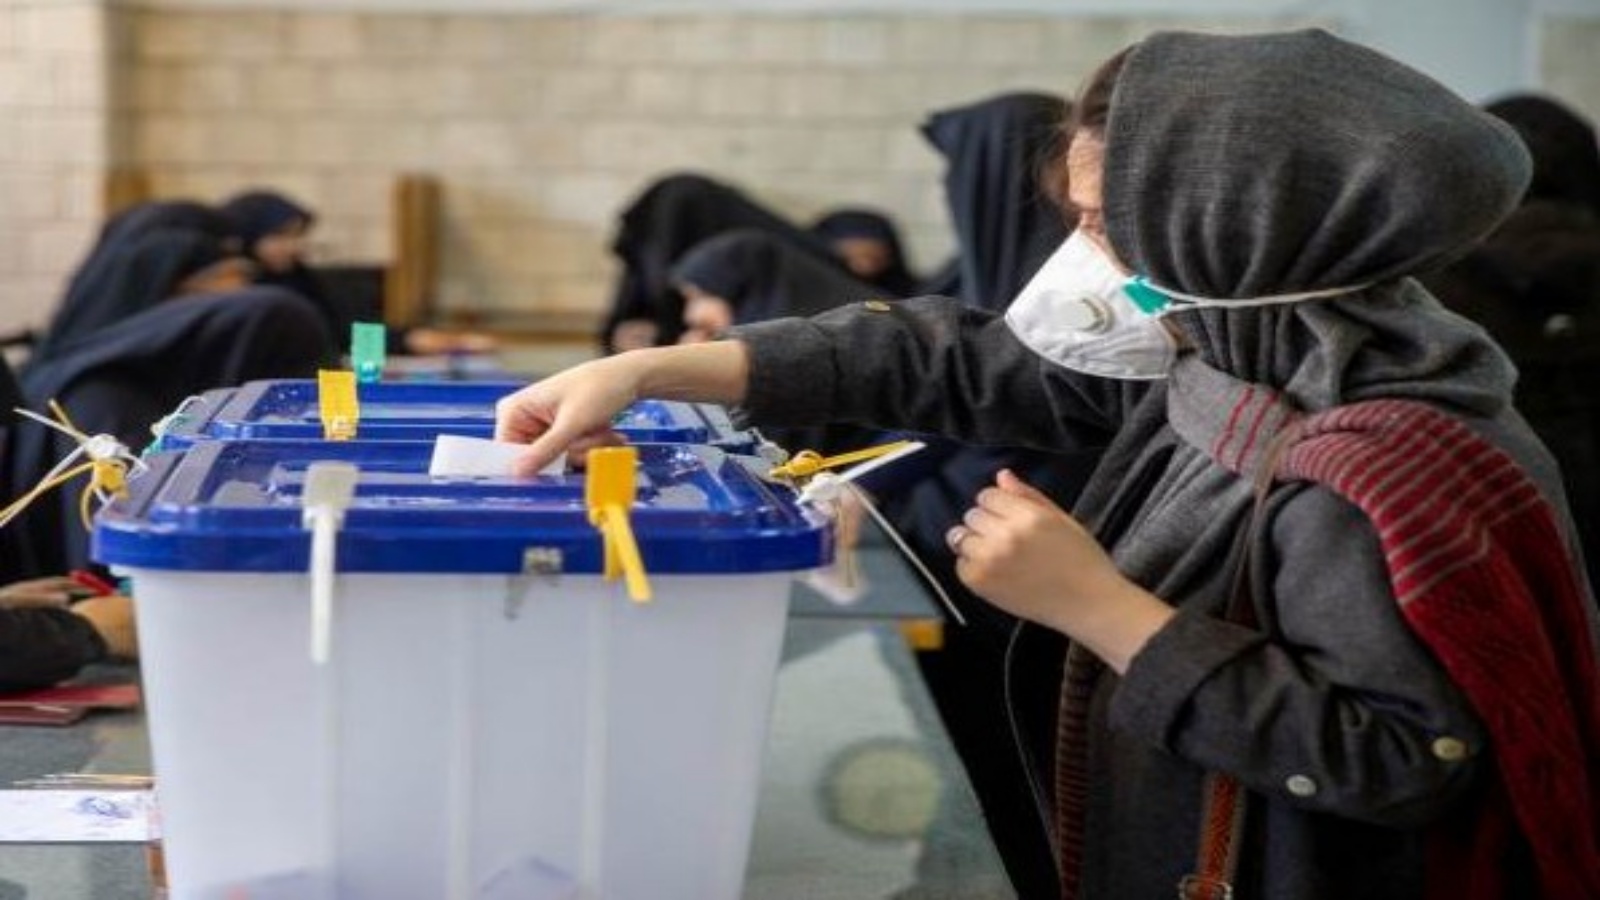 ناخبة ايرانية تدلي بصوتها في انتخابات فبراير 2020 - أرشيف